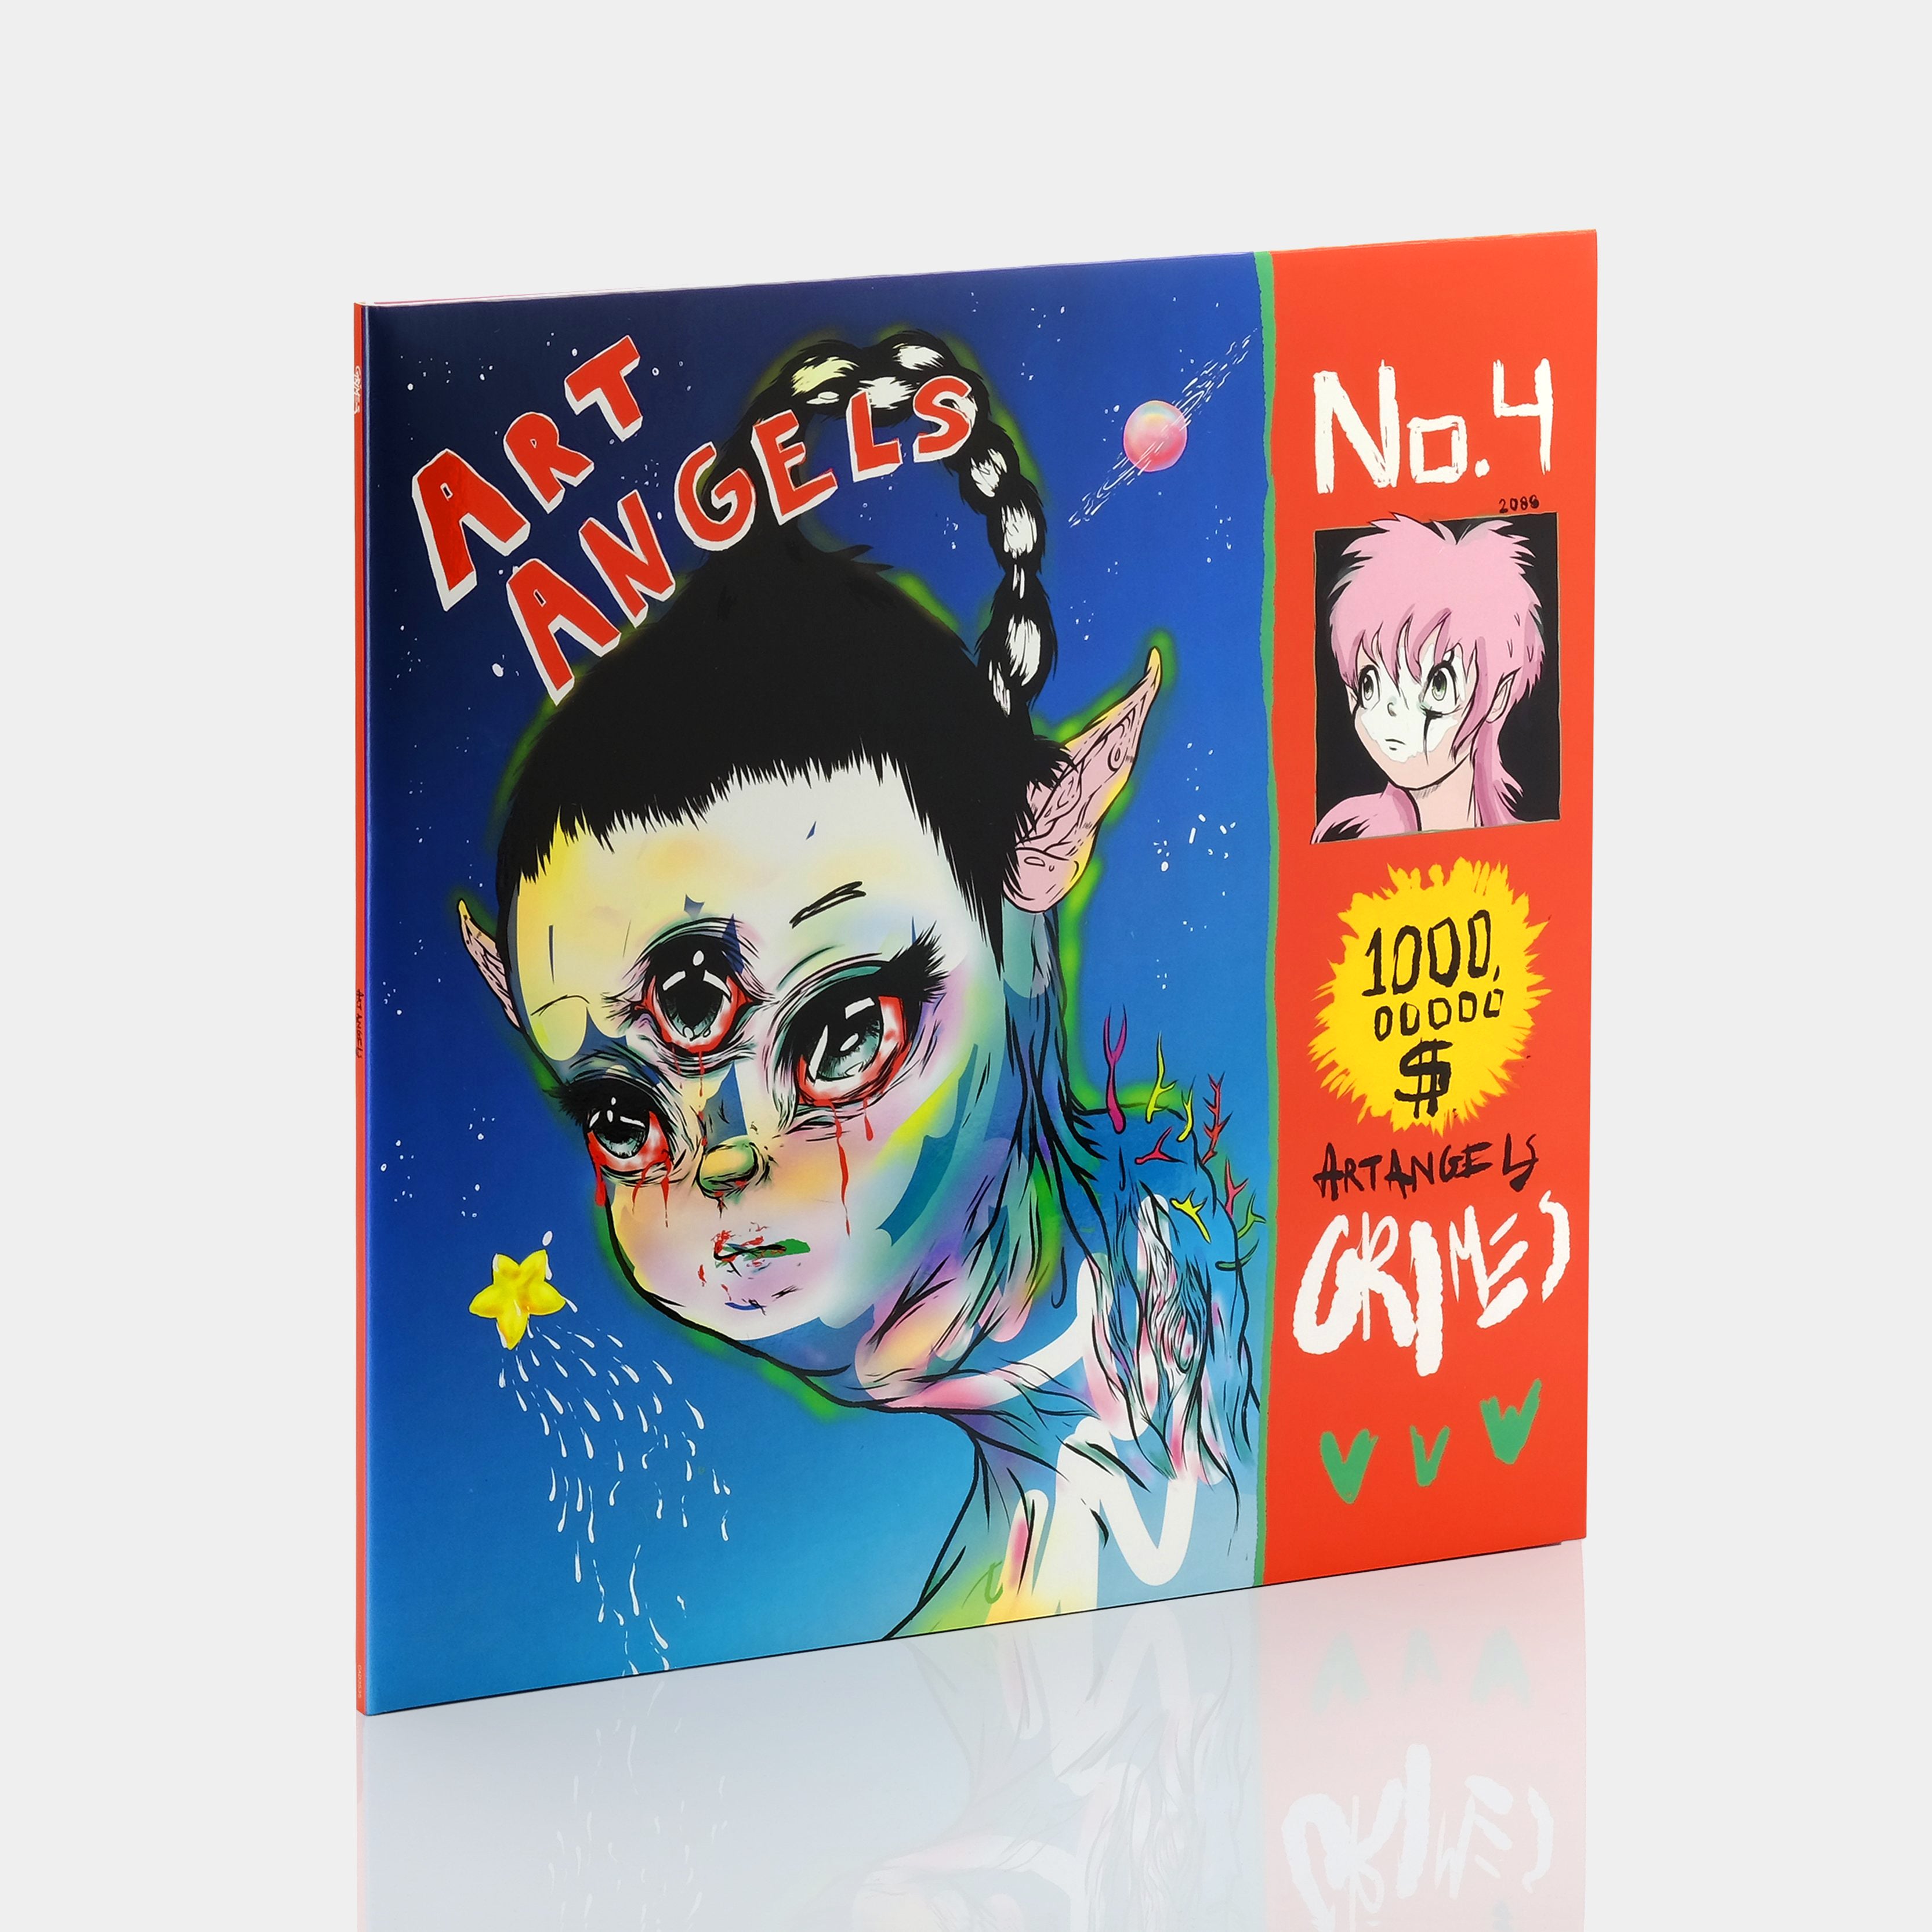 Grimes - Art Angels LP Vinyl Record